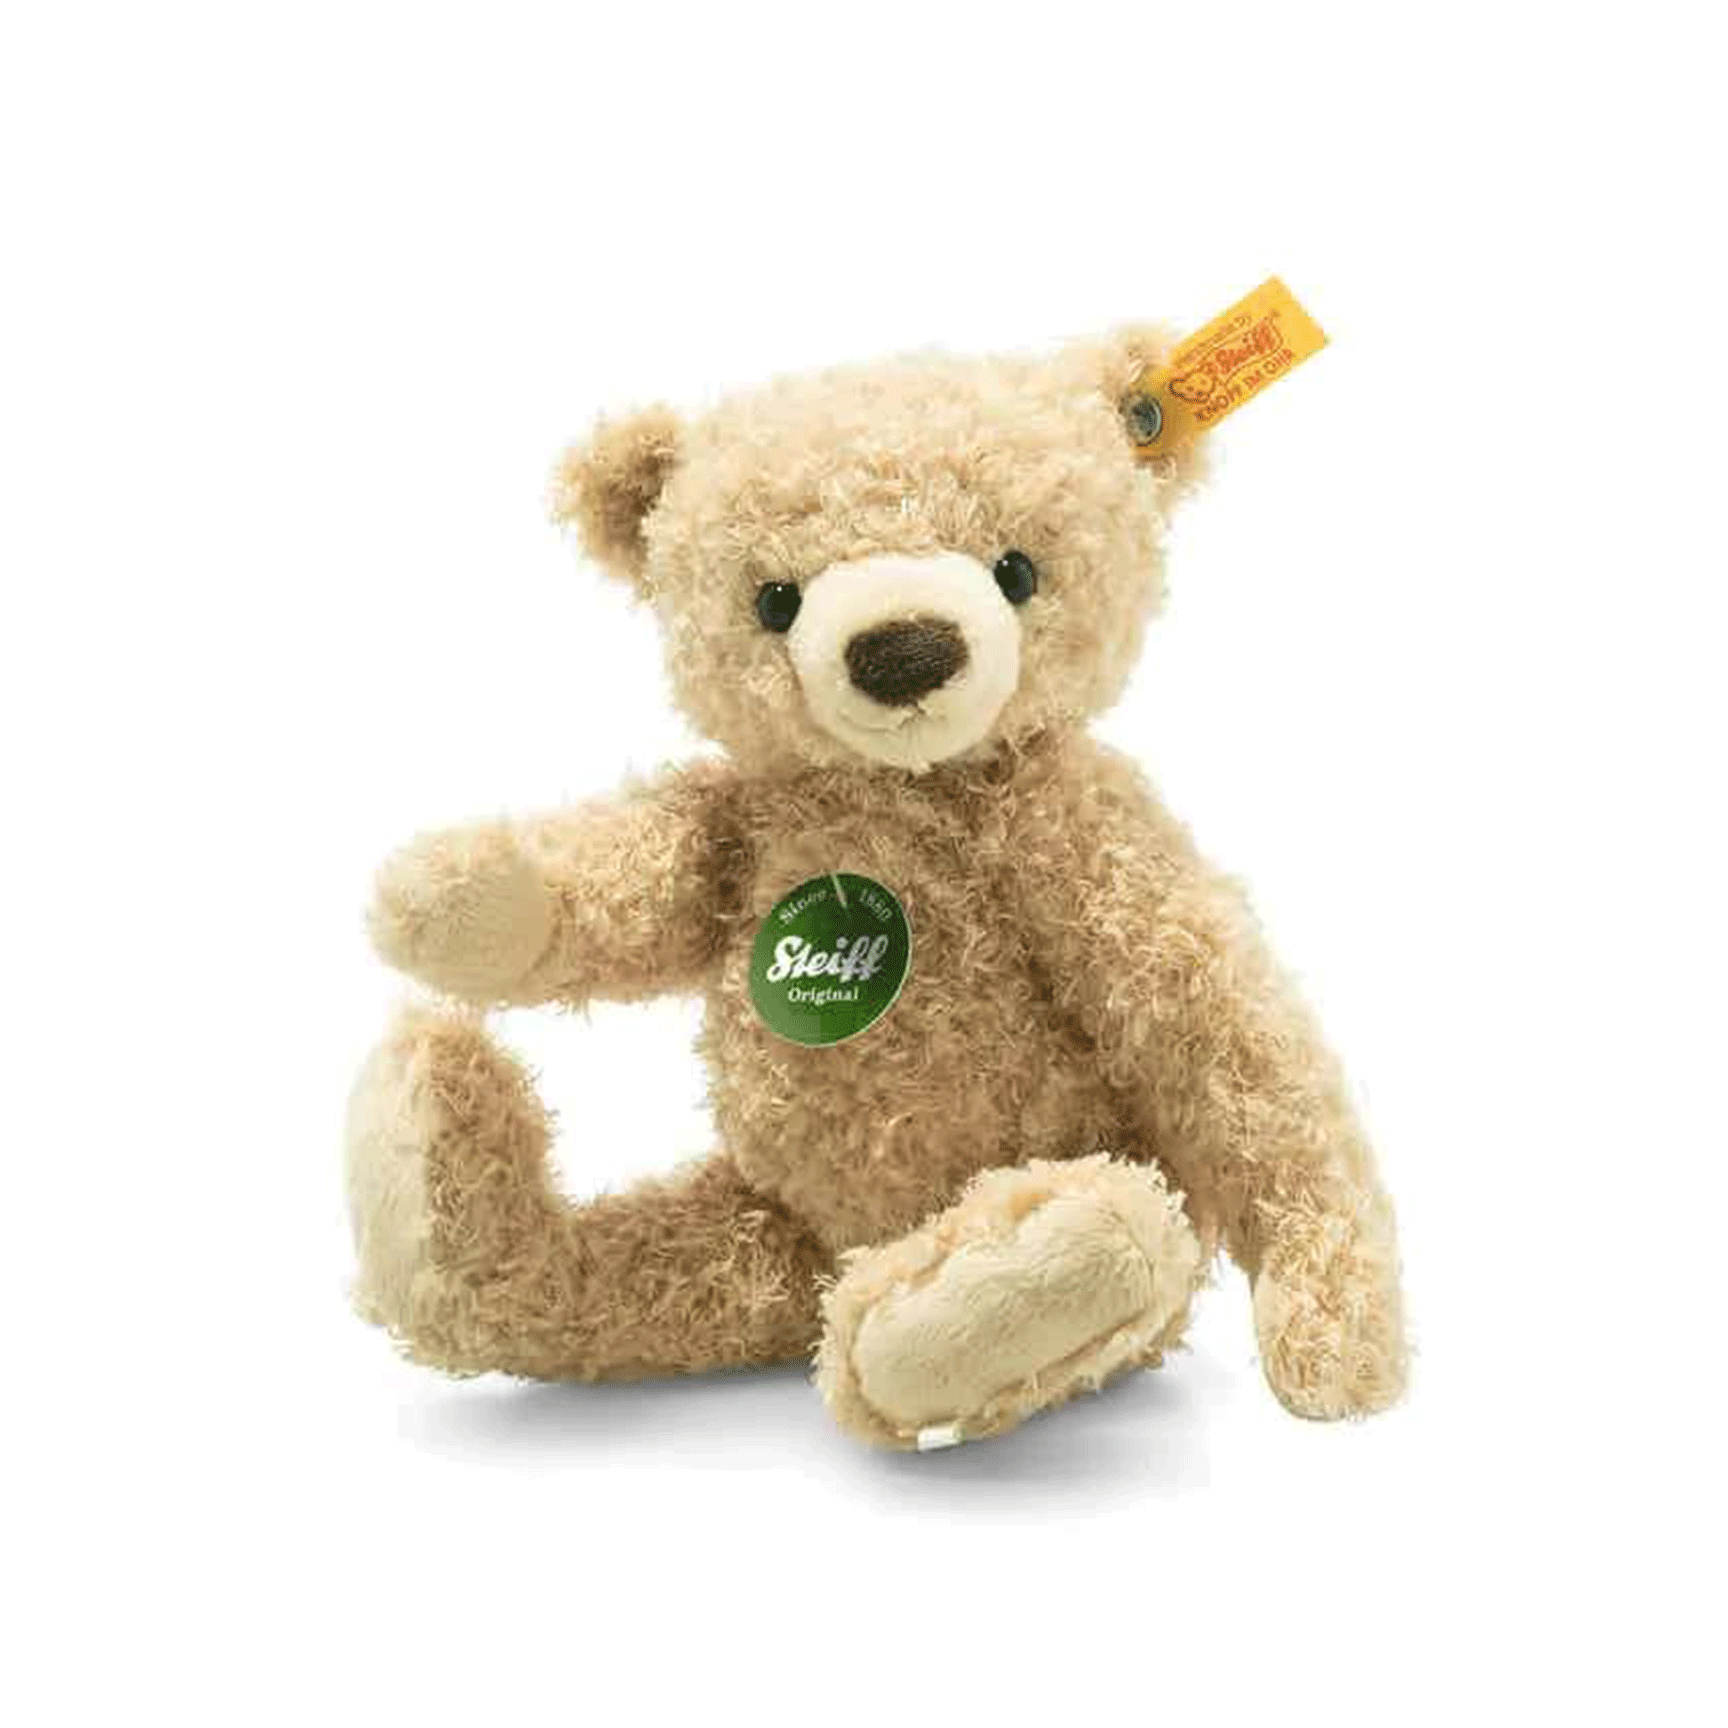 Steiff teddy bears Steiff Max Teddy 23002